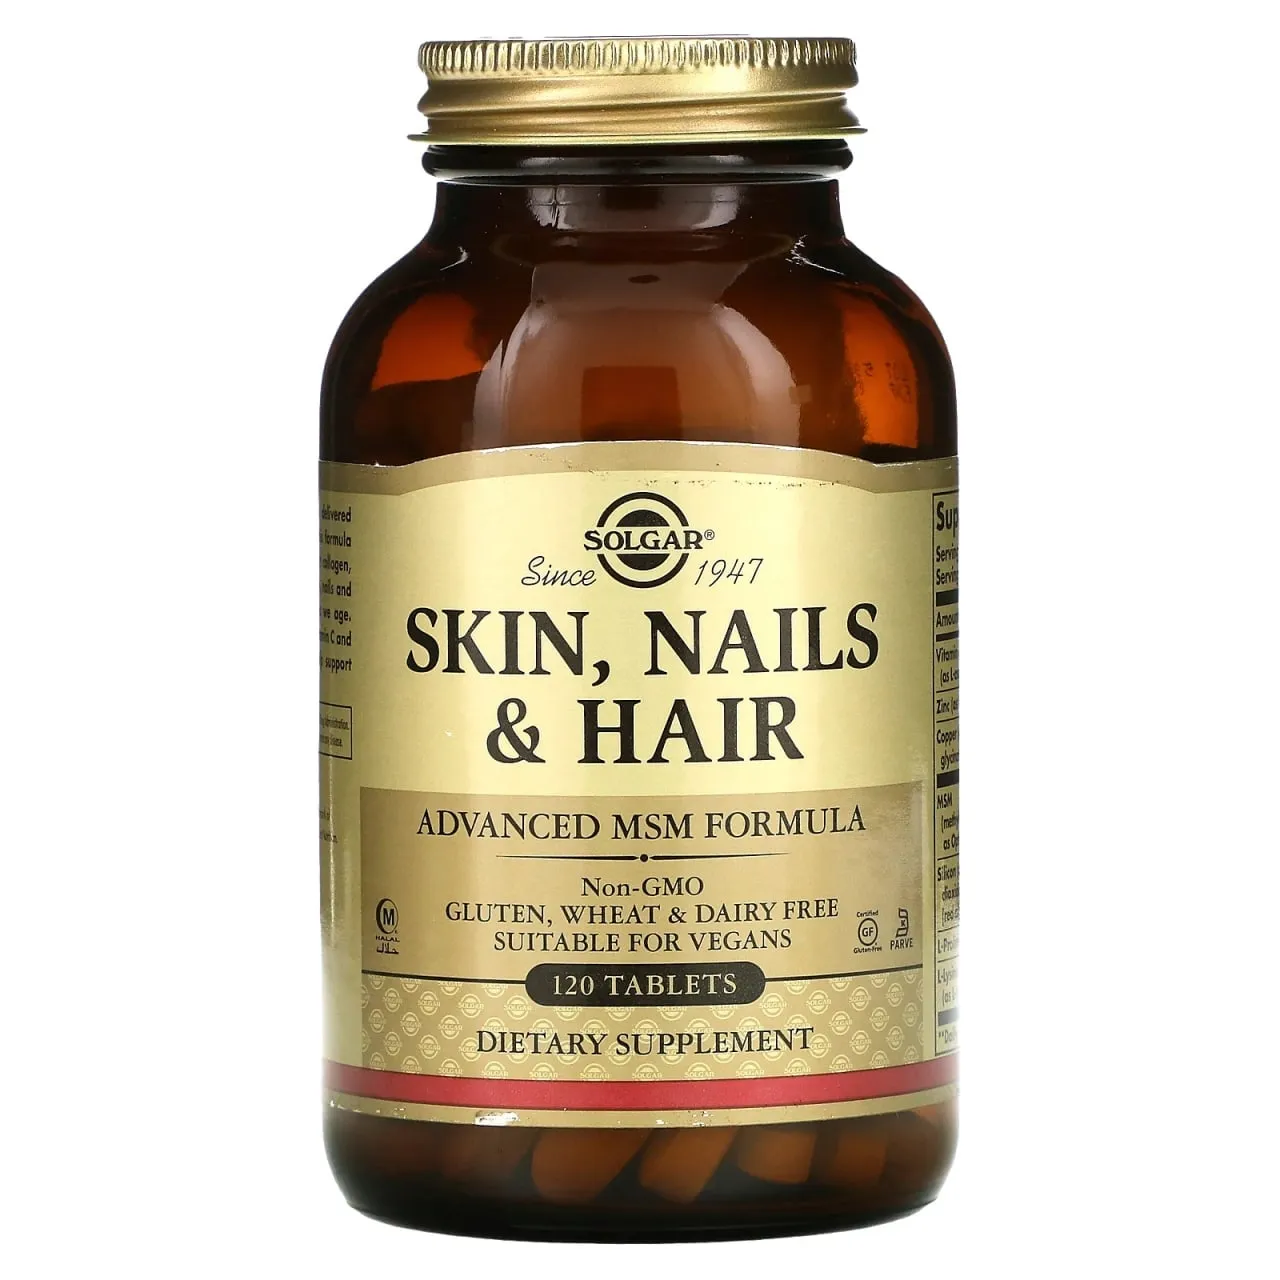 Витамины для волос, кожи и ногтей, Skin, Nails & Hair, Solgar улучшенная формула с МСМ, 120 таблеток#1